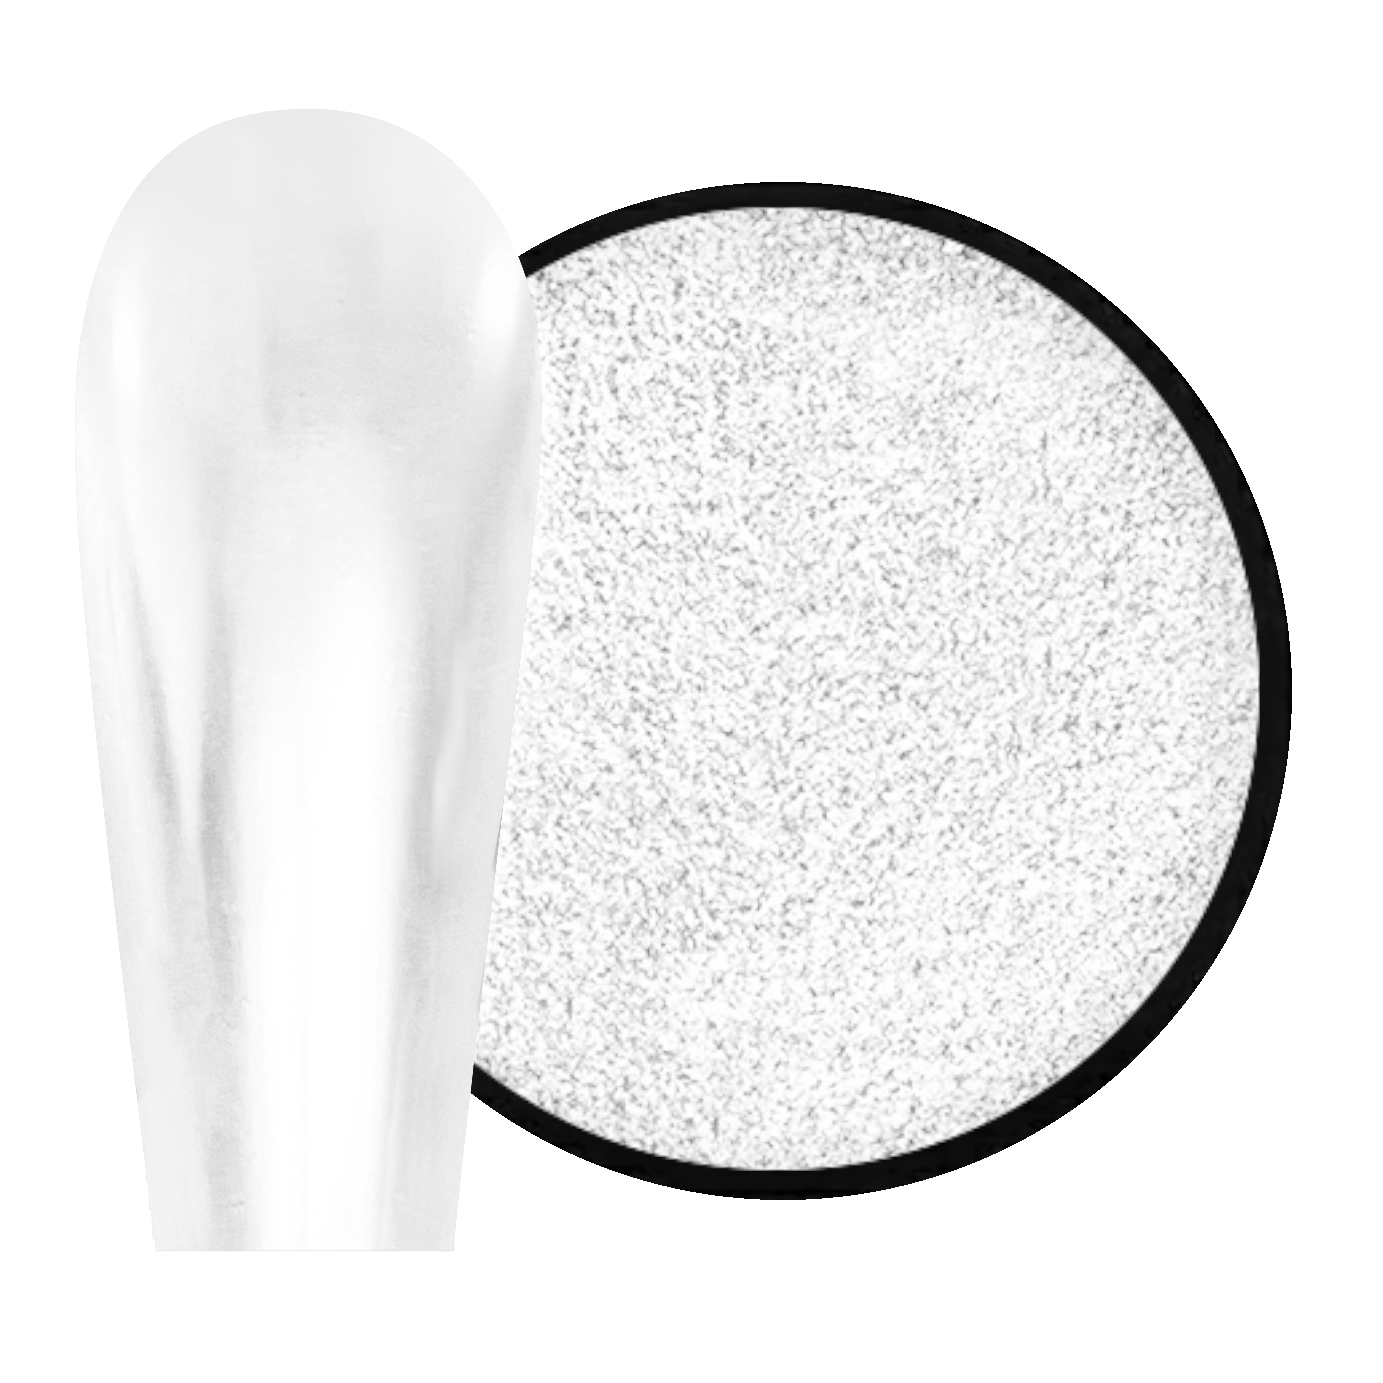 JUSTNAILS Mirror-Glow Nagel Pigment - White